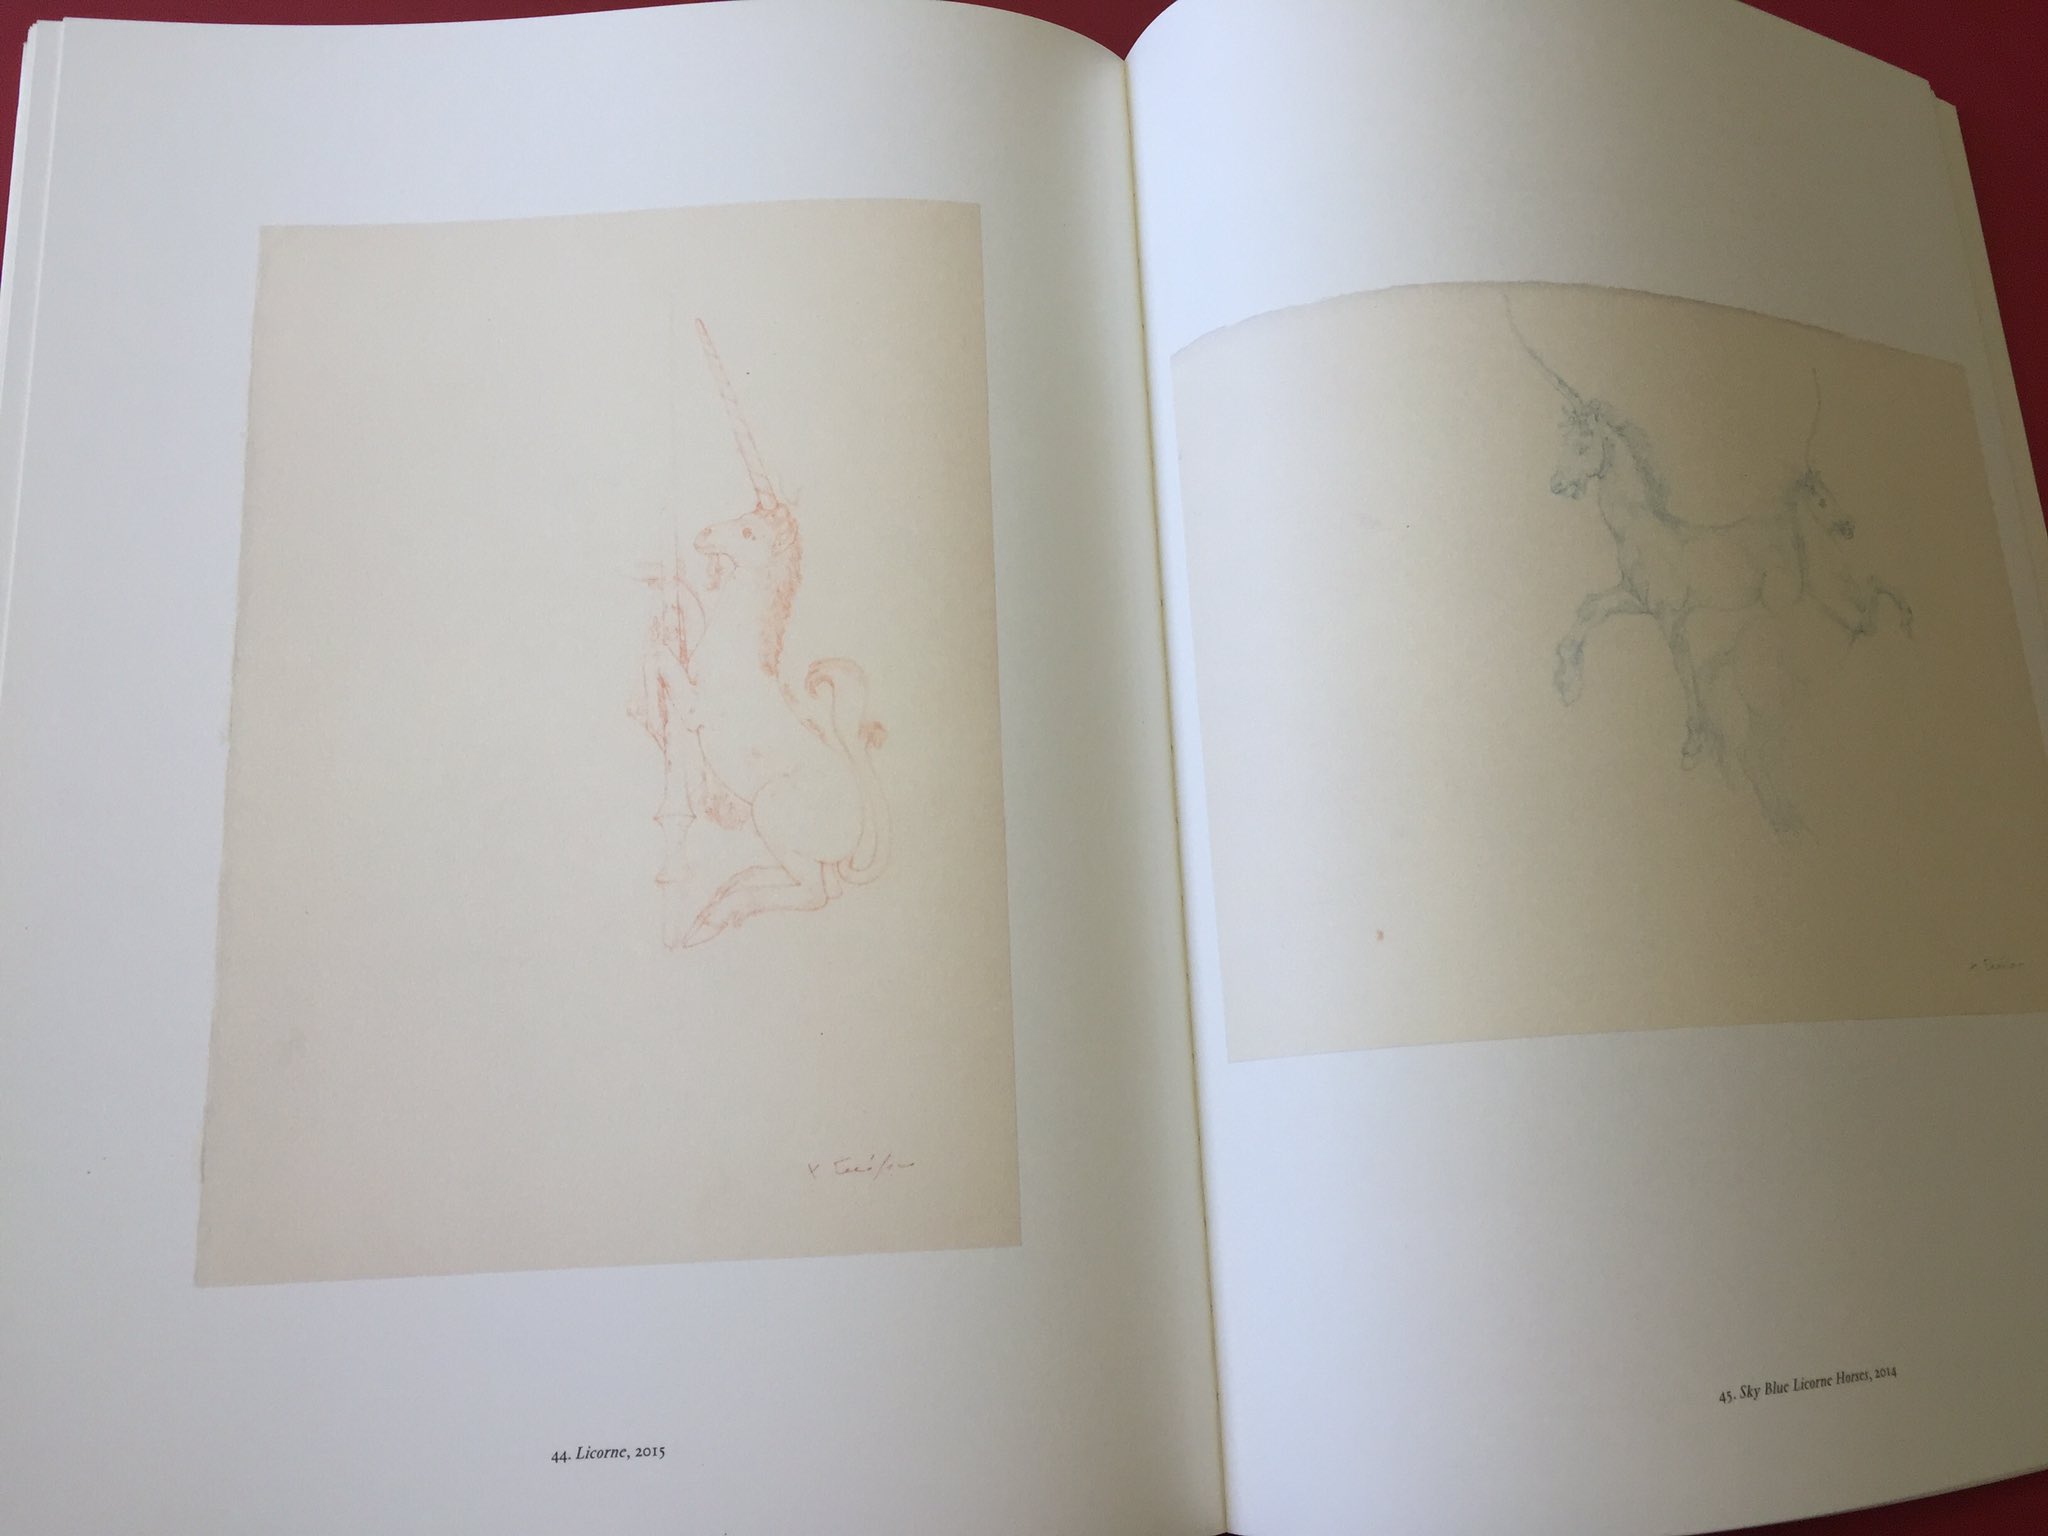 frimærke hvad som helst Bunke af Arctic Paper UK on Twitter: "Magical sample #Munken Print White vol 15 150g  with #Munken Pure Rough 170g cover! #albedecocker #frasermuggeridge  https://t.co/dWYNDaC8RO" / Twitter